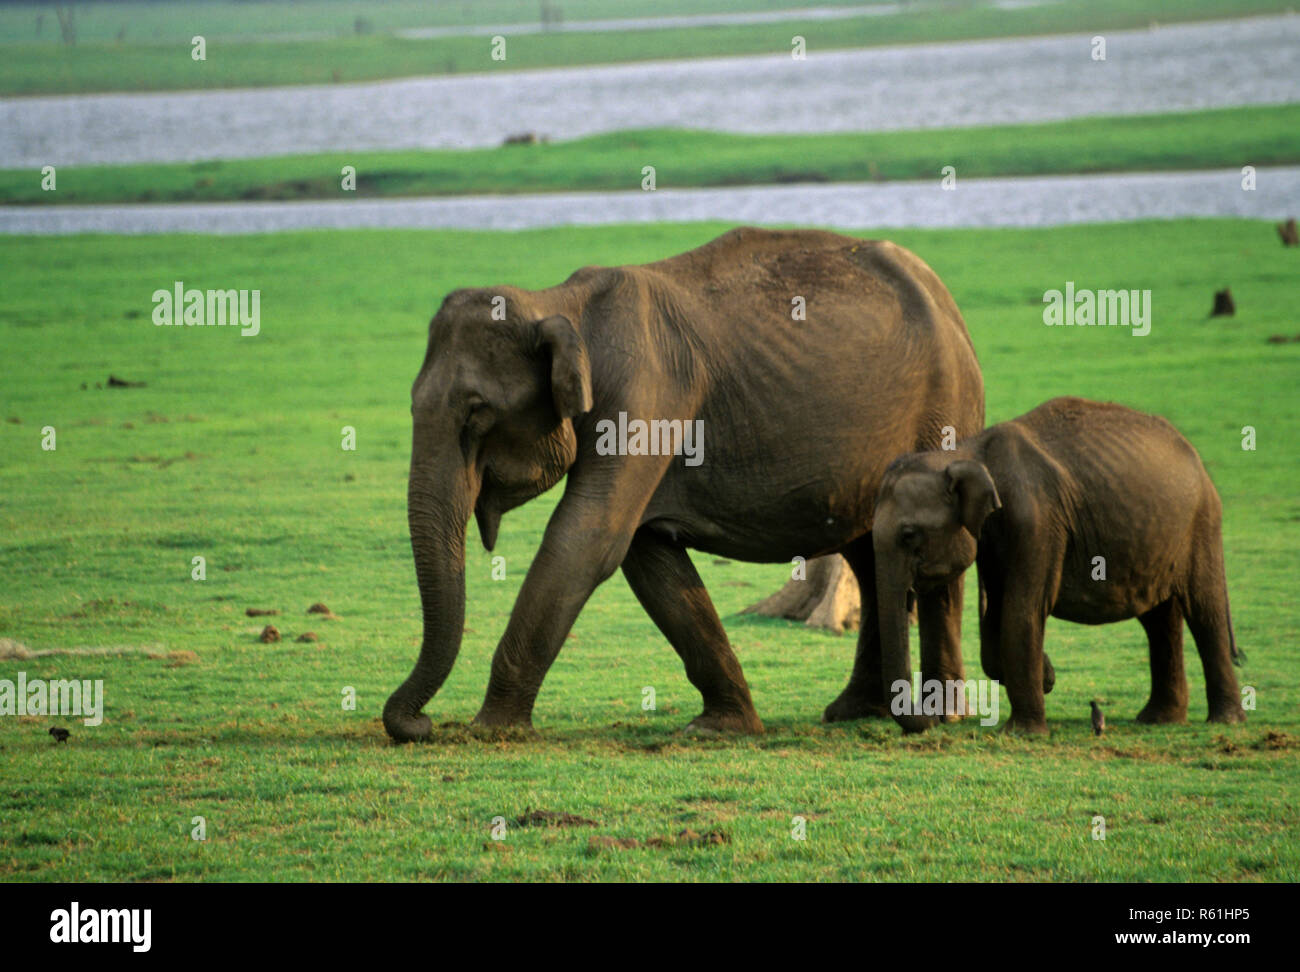 Les éléphants femelles et les jeunes un Cub calf (Elephas maximus), Guatemala City national park, Karnataka, Inde Banque D'Images